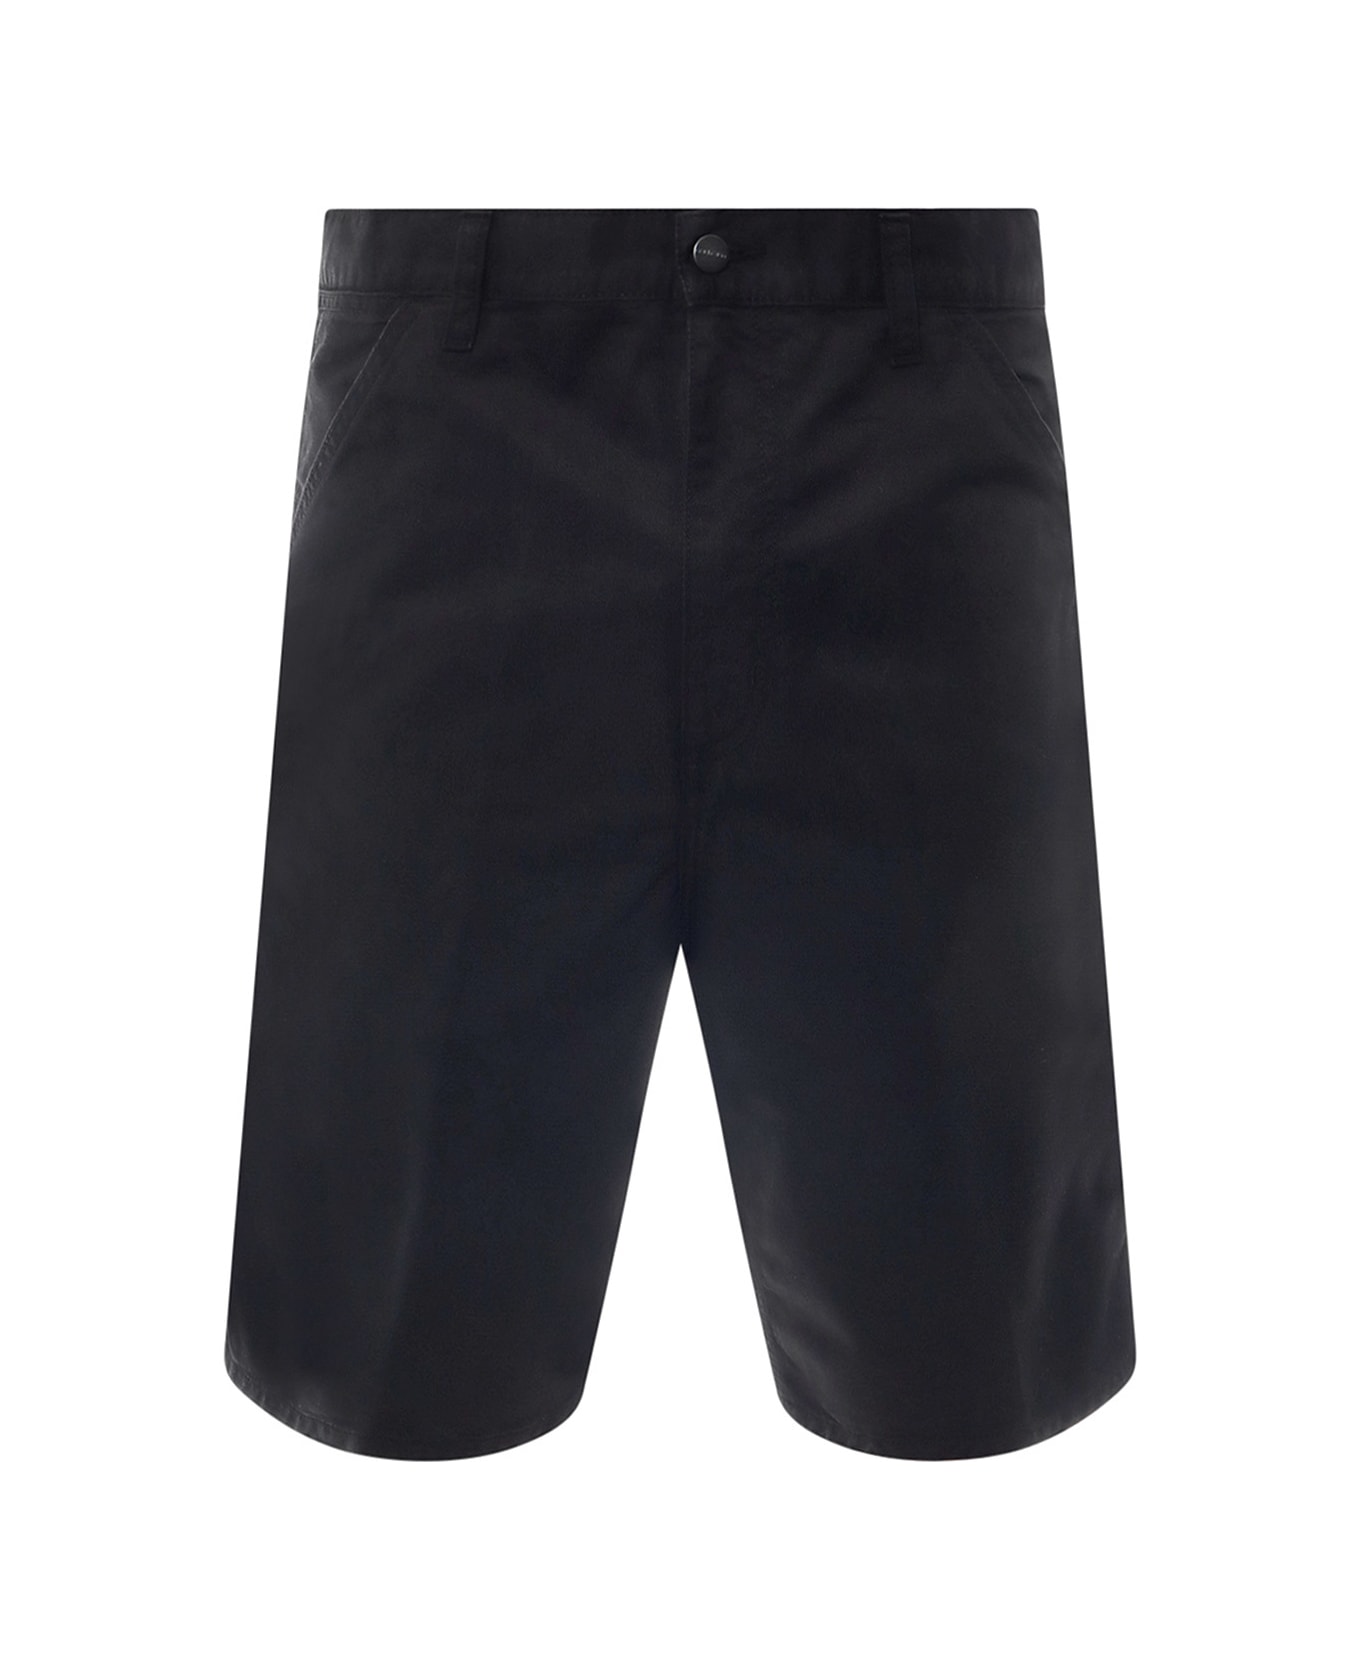 Carhartt Bermuda Shorts - Black ショートパンツ